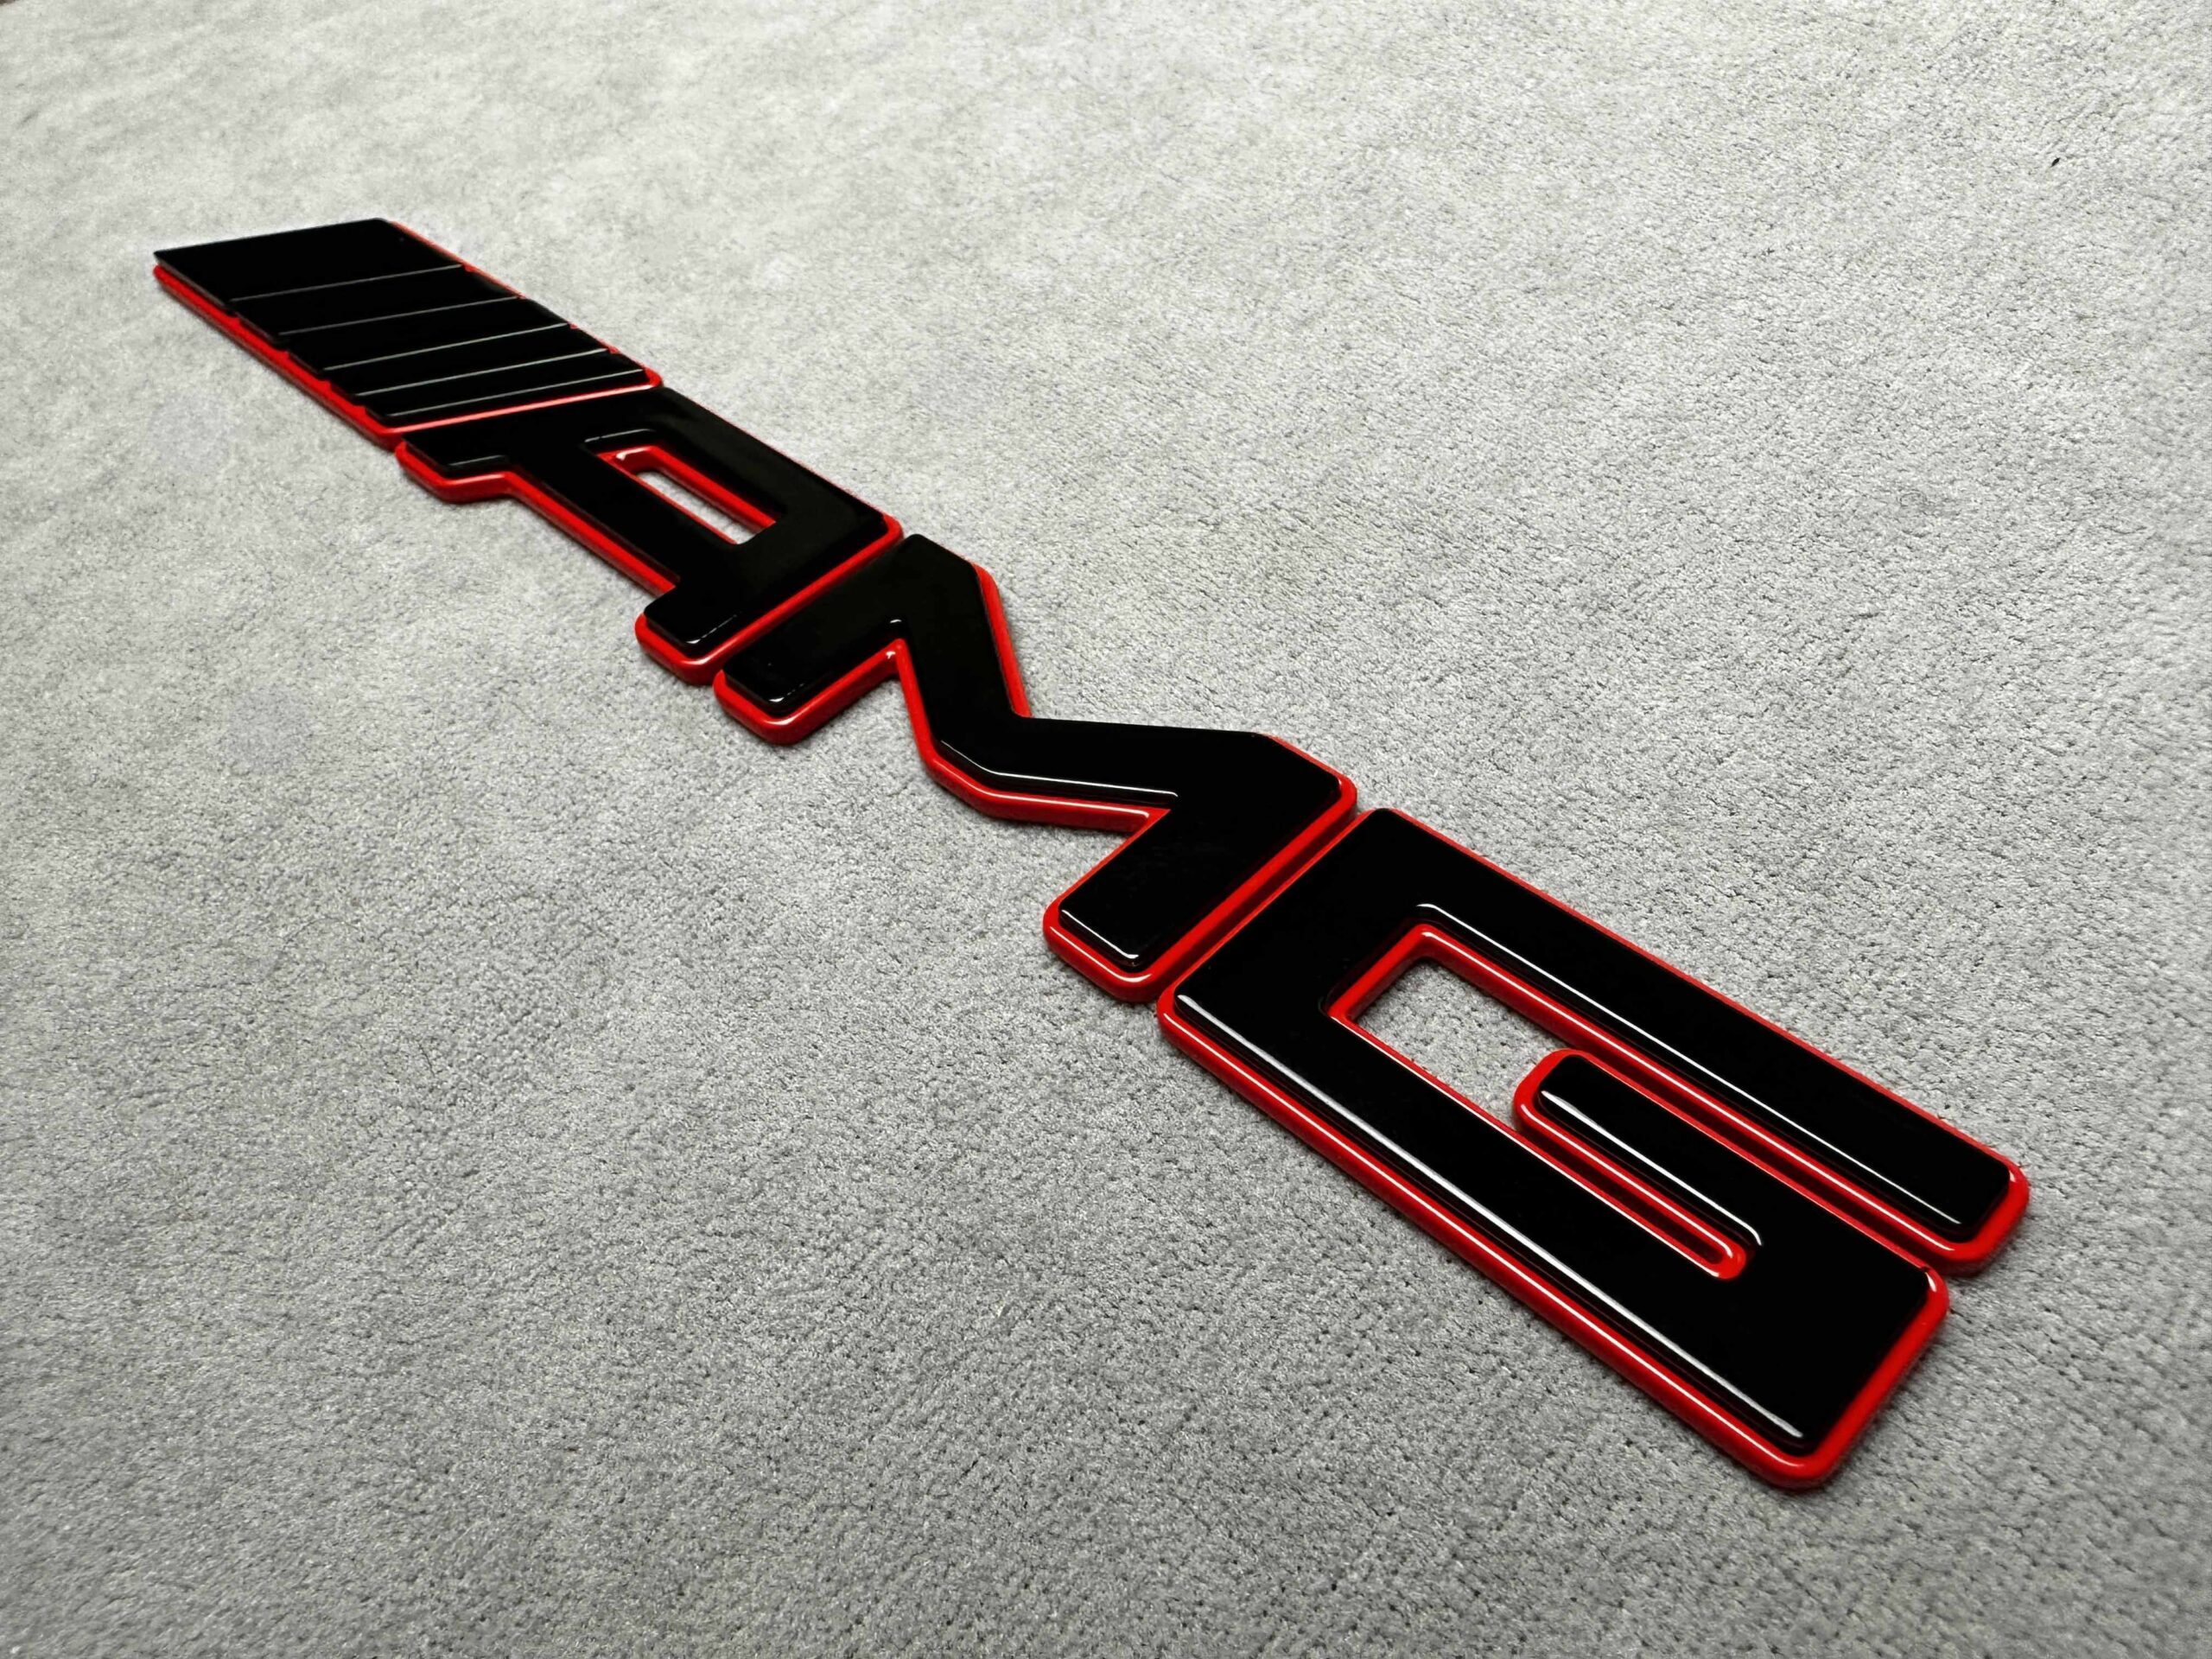 BRABUS 700 Emblem GLOSS BLACK RED Rear Trunk Luggage Lid Logo Tailgate  Badge AMG крепежные клипсы V83491706 купить по выгодной цене от 94 руб. в  интернет-магазине  с доставкой